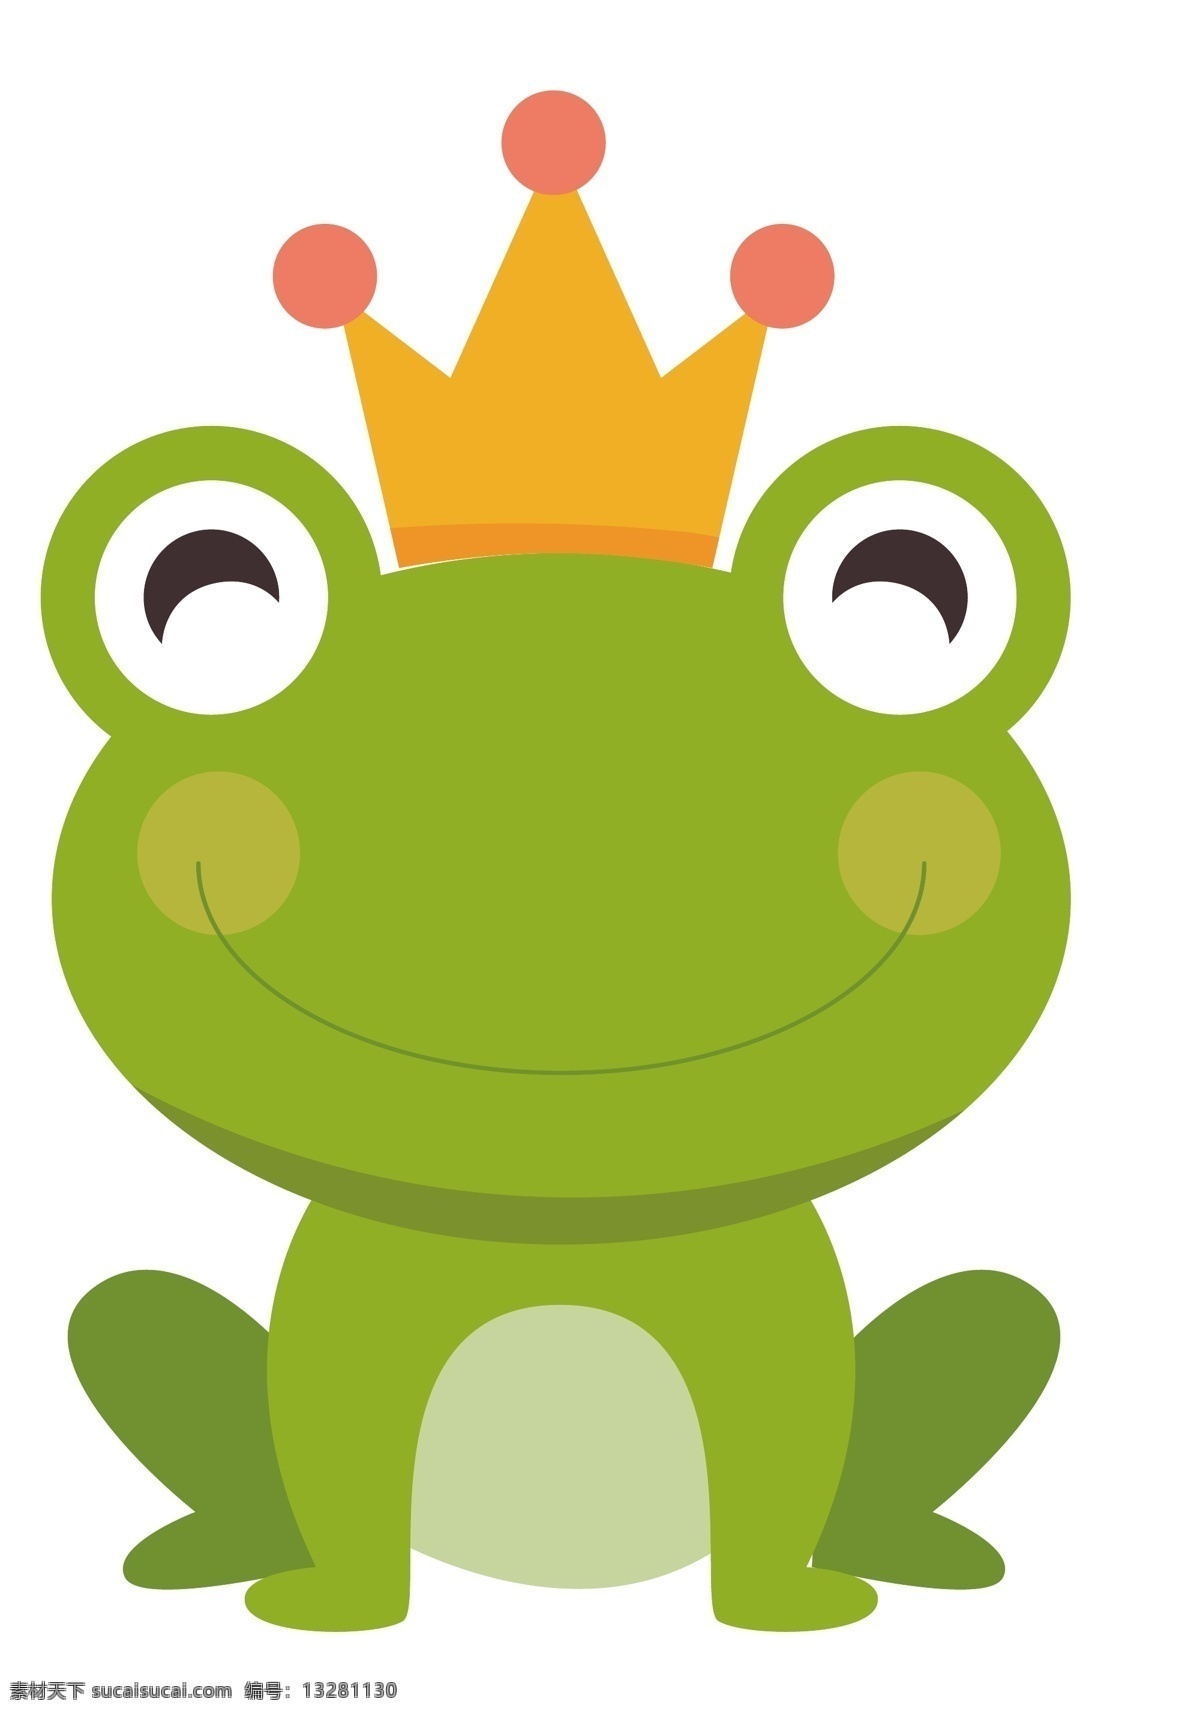 小青蛙 青蛙王子 可爱蛙 萌蛙 青蛙 动漫动画